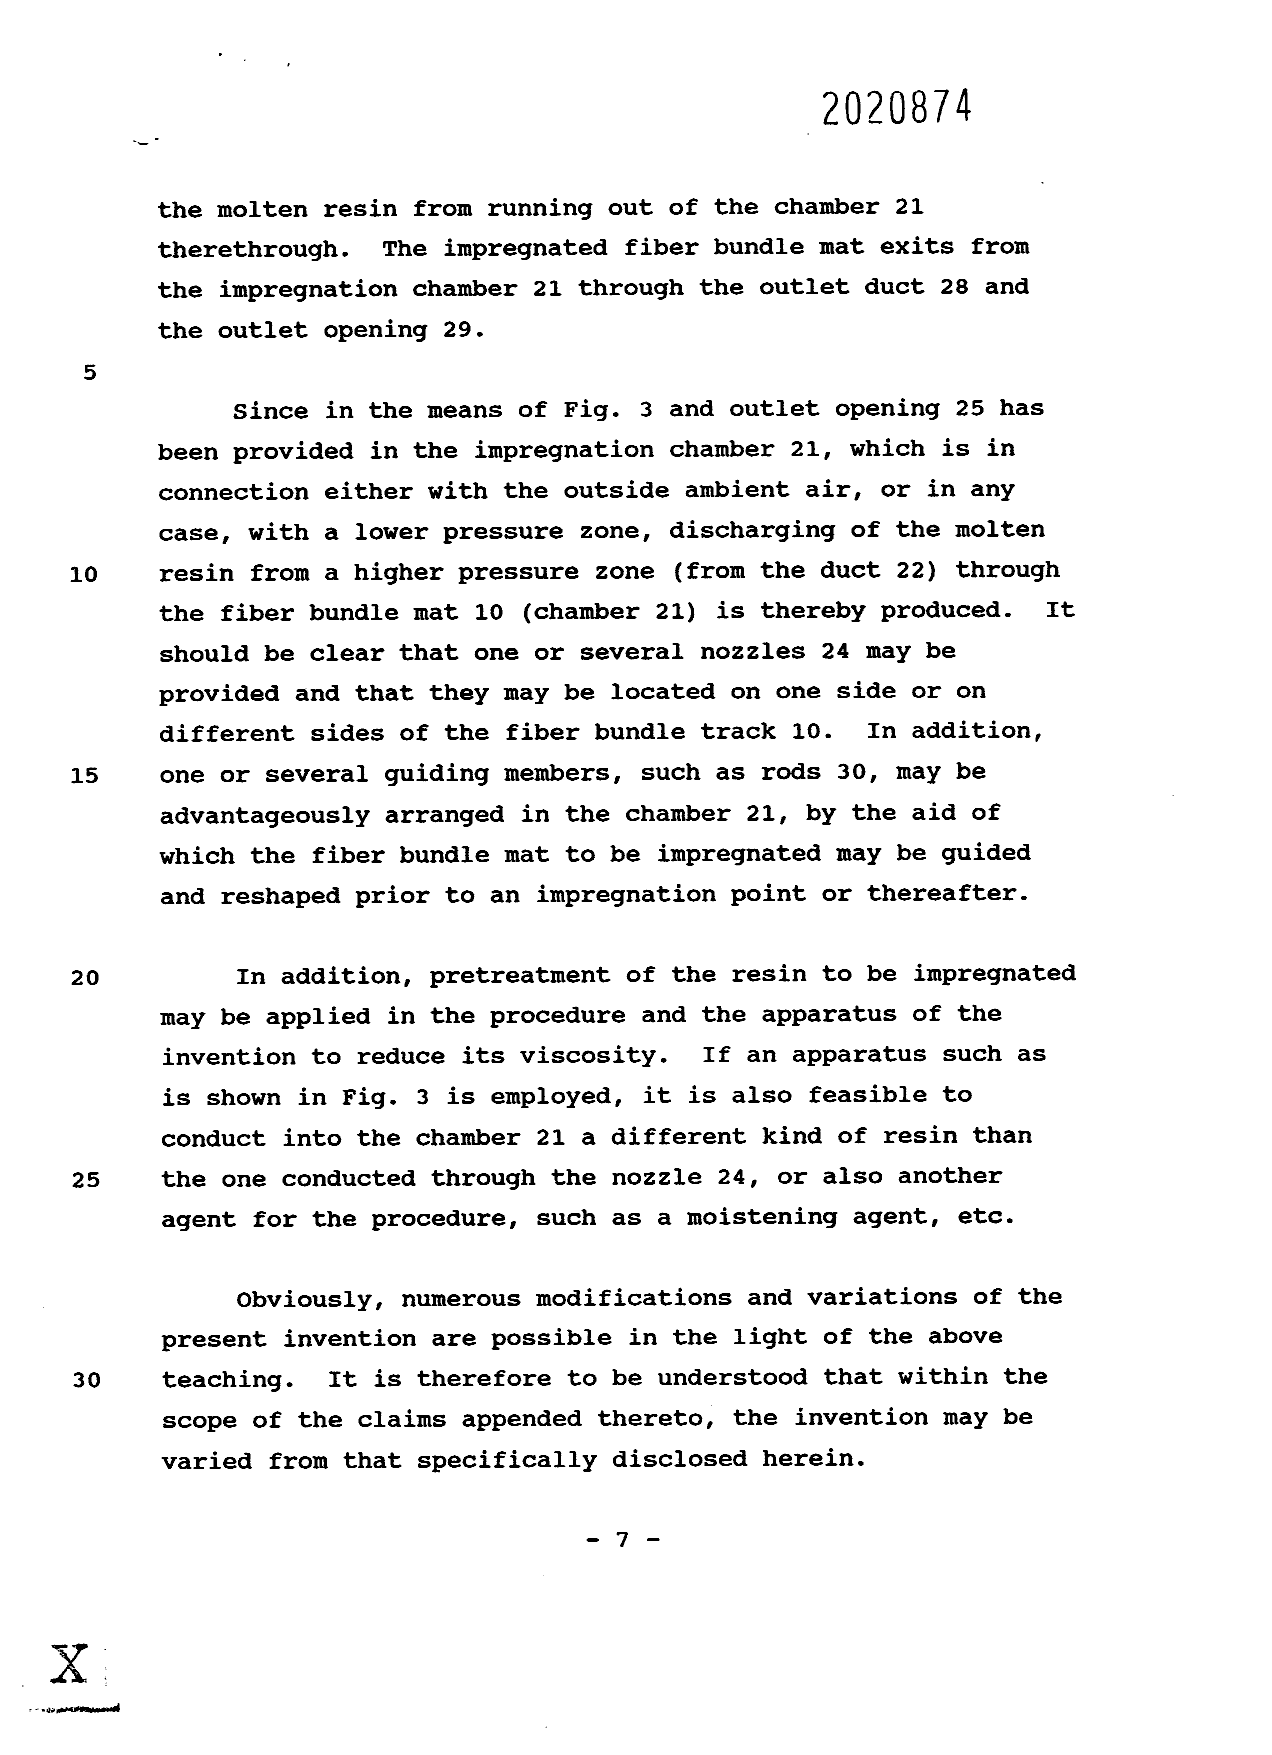 Canadian Patent Document 2020874. Description 19940816. Image 7 of 7